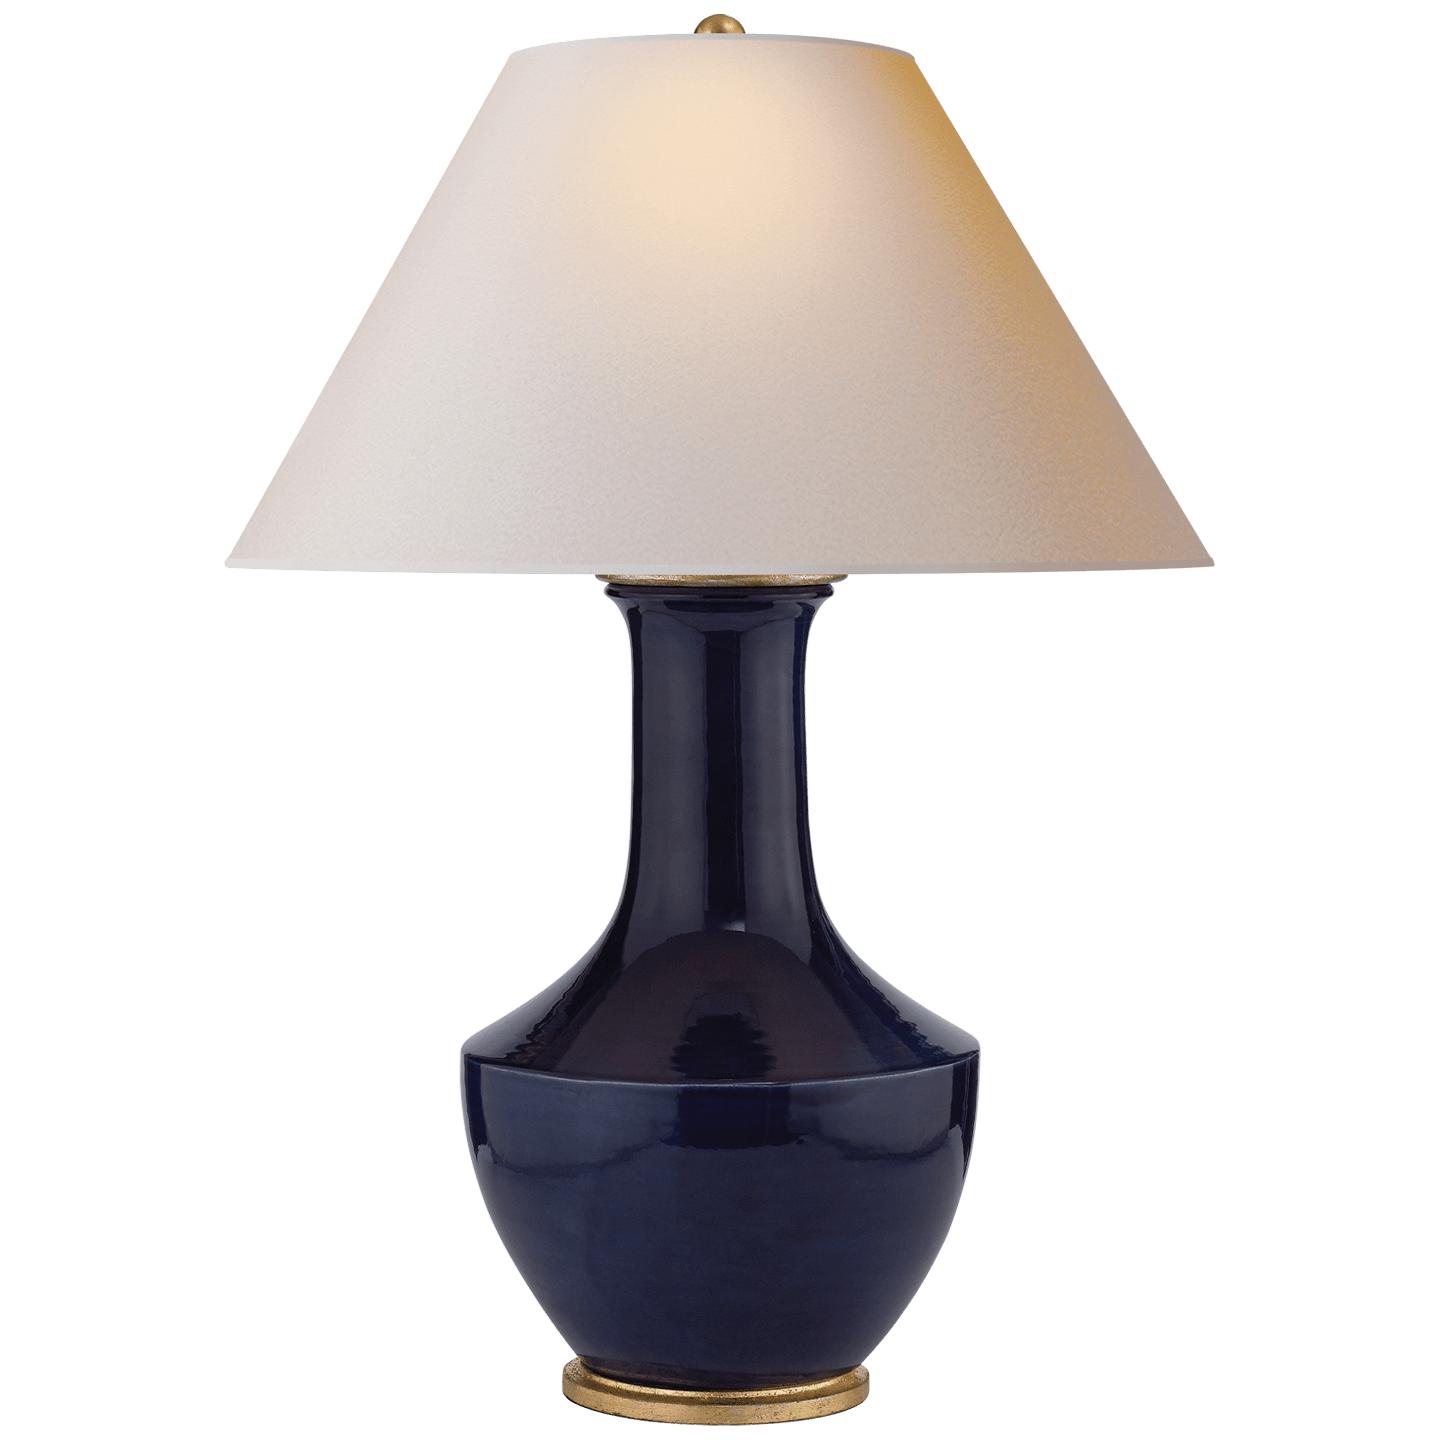 Купить Настольная лампа Lambay Table Lamp в интернет-магазине roooms.ru